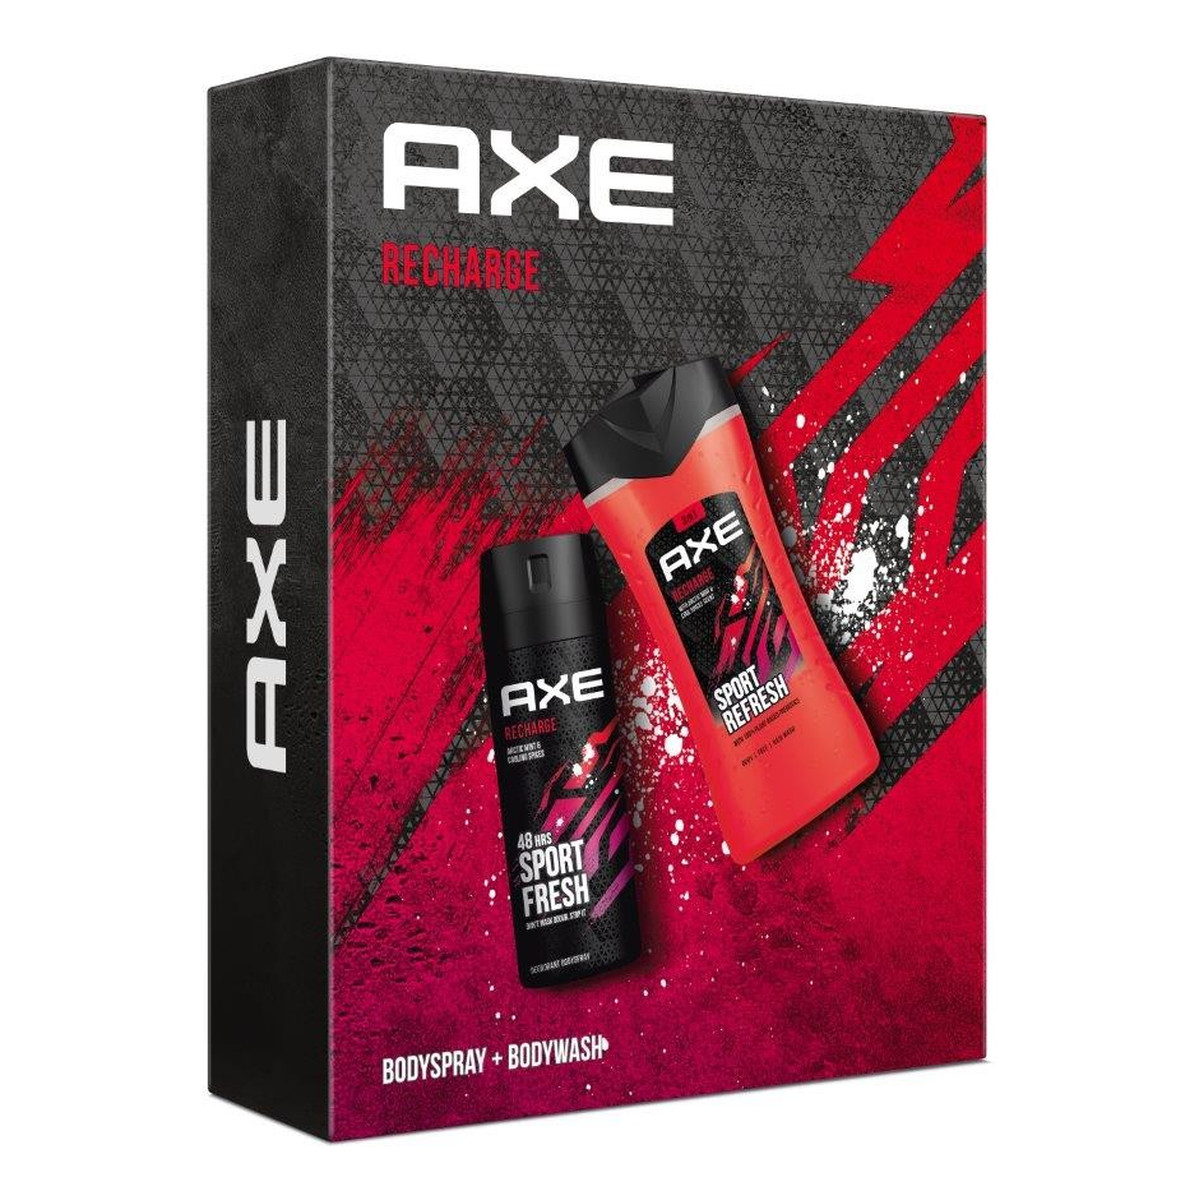 Axe Zestaw prezentowy Recharge dezodorant 100 ml + żel pod prysznic 200ml